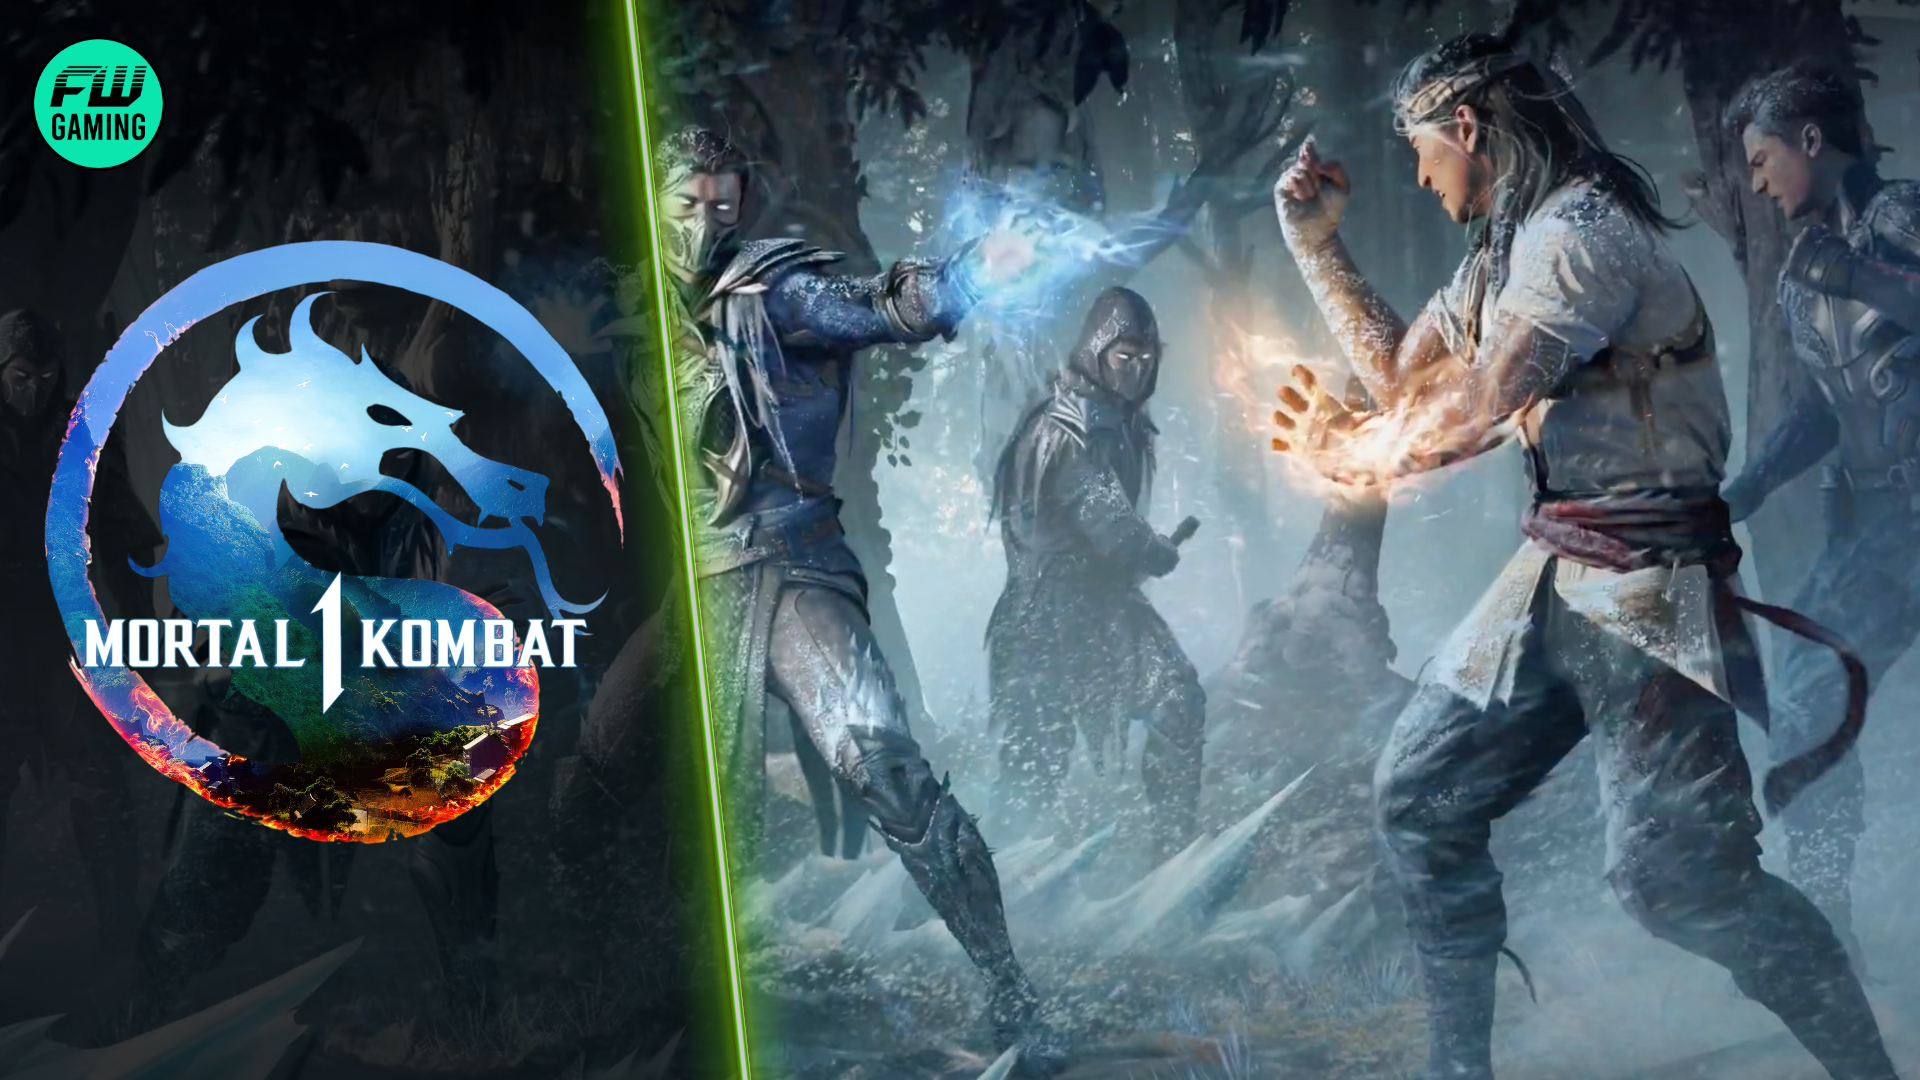 First Mortal Kombat Trailer Released - FandomWire